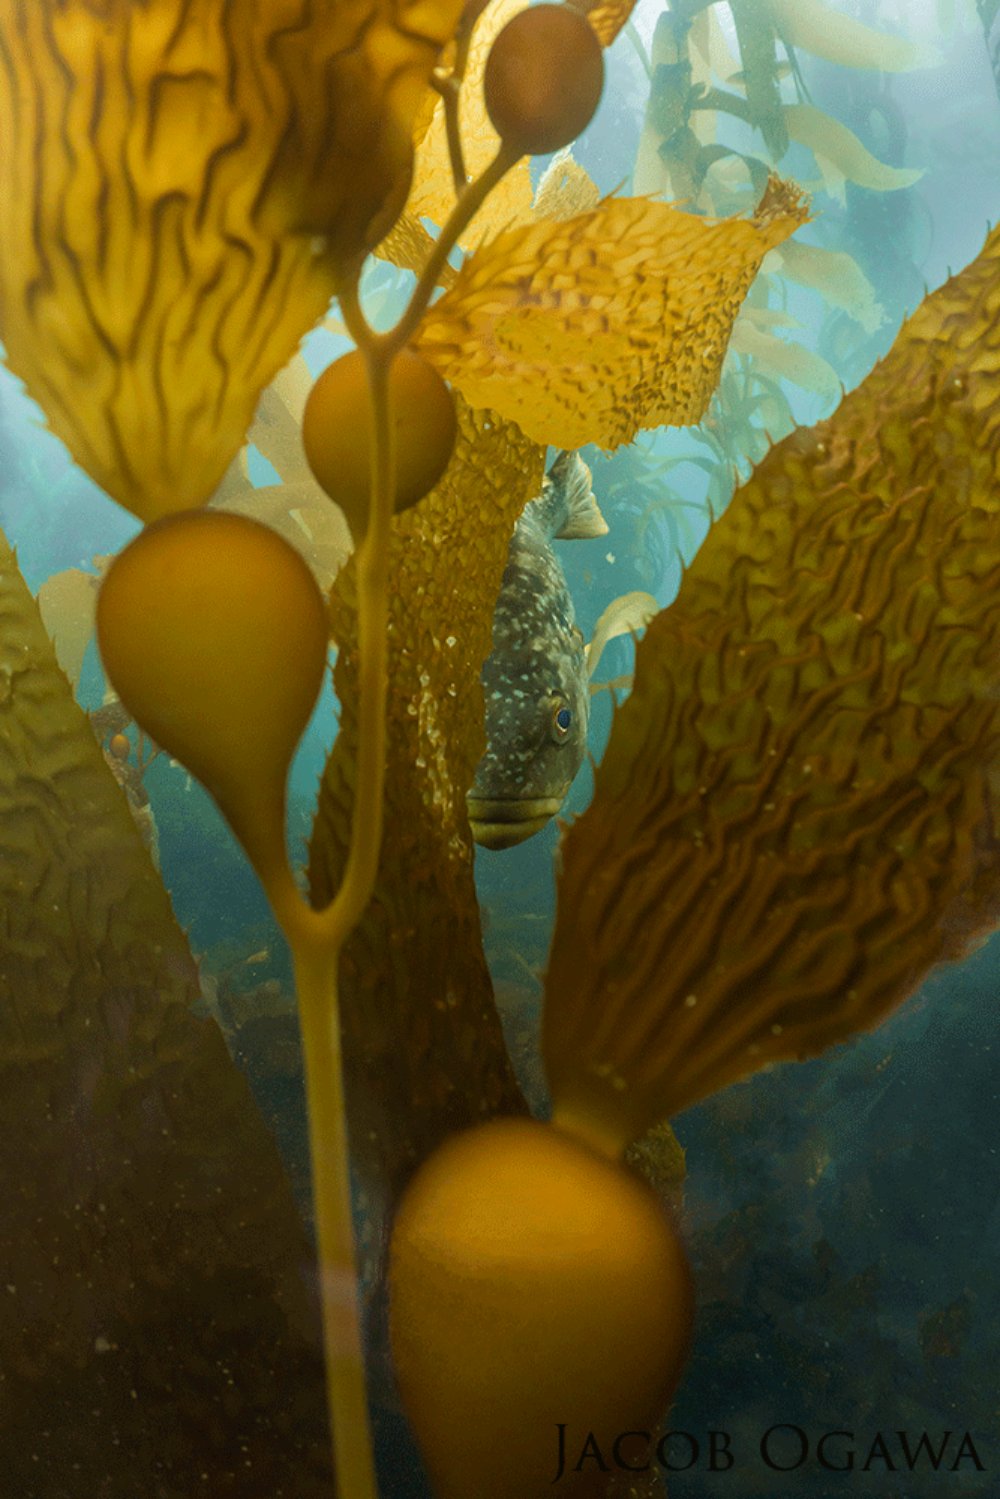 Bass hidden behind kelp.